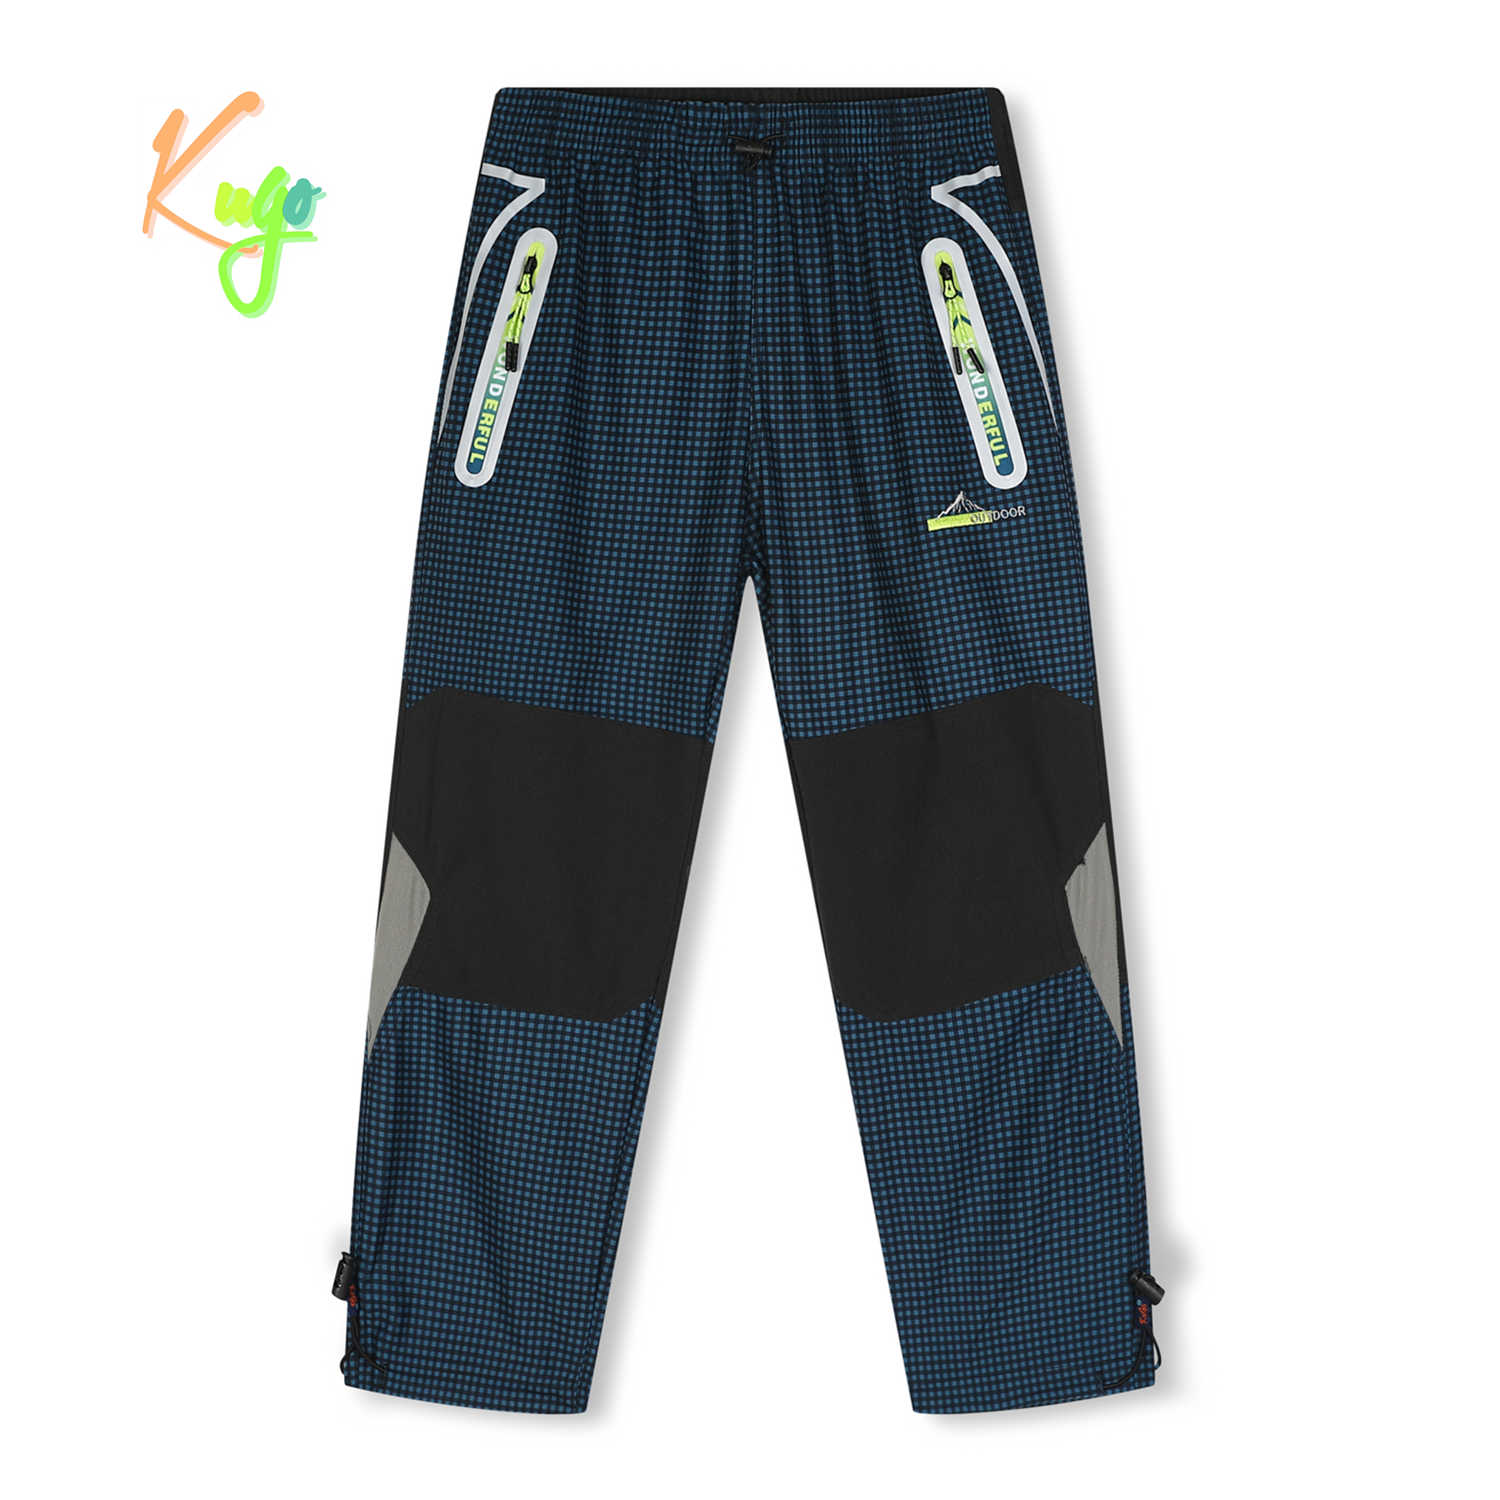 Chlapecké outdoorové kalhoty - KUGO G9655, petrol / signální zipy Barva: Petrol, Velikost: 116